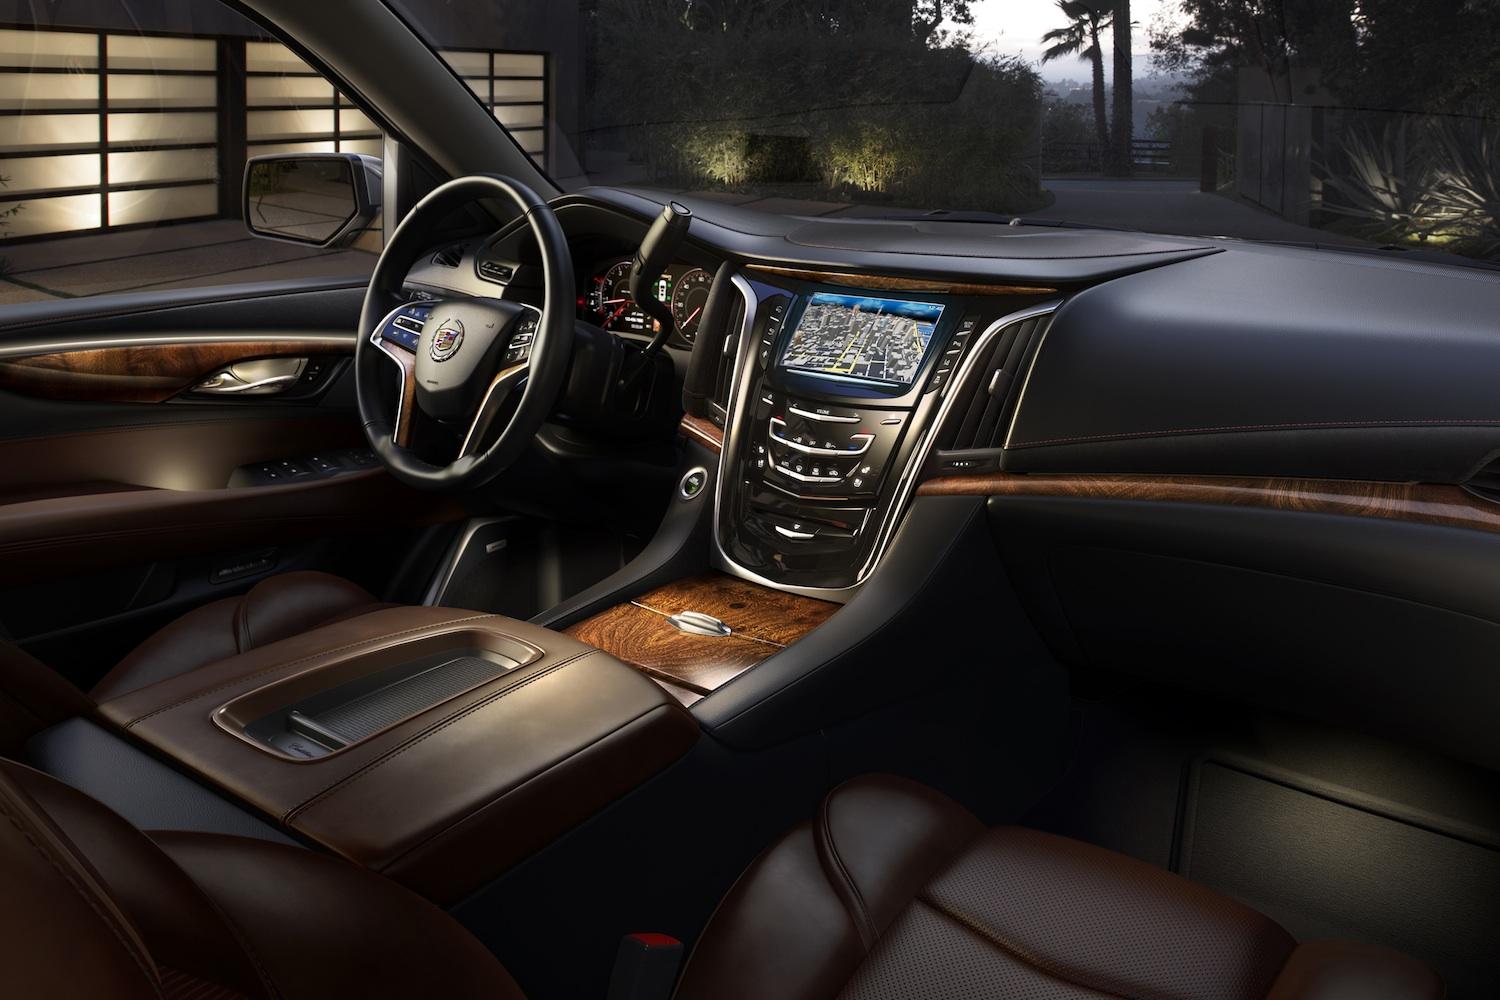 Cadillac-Escalade-interior-tease-3-2.jpg